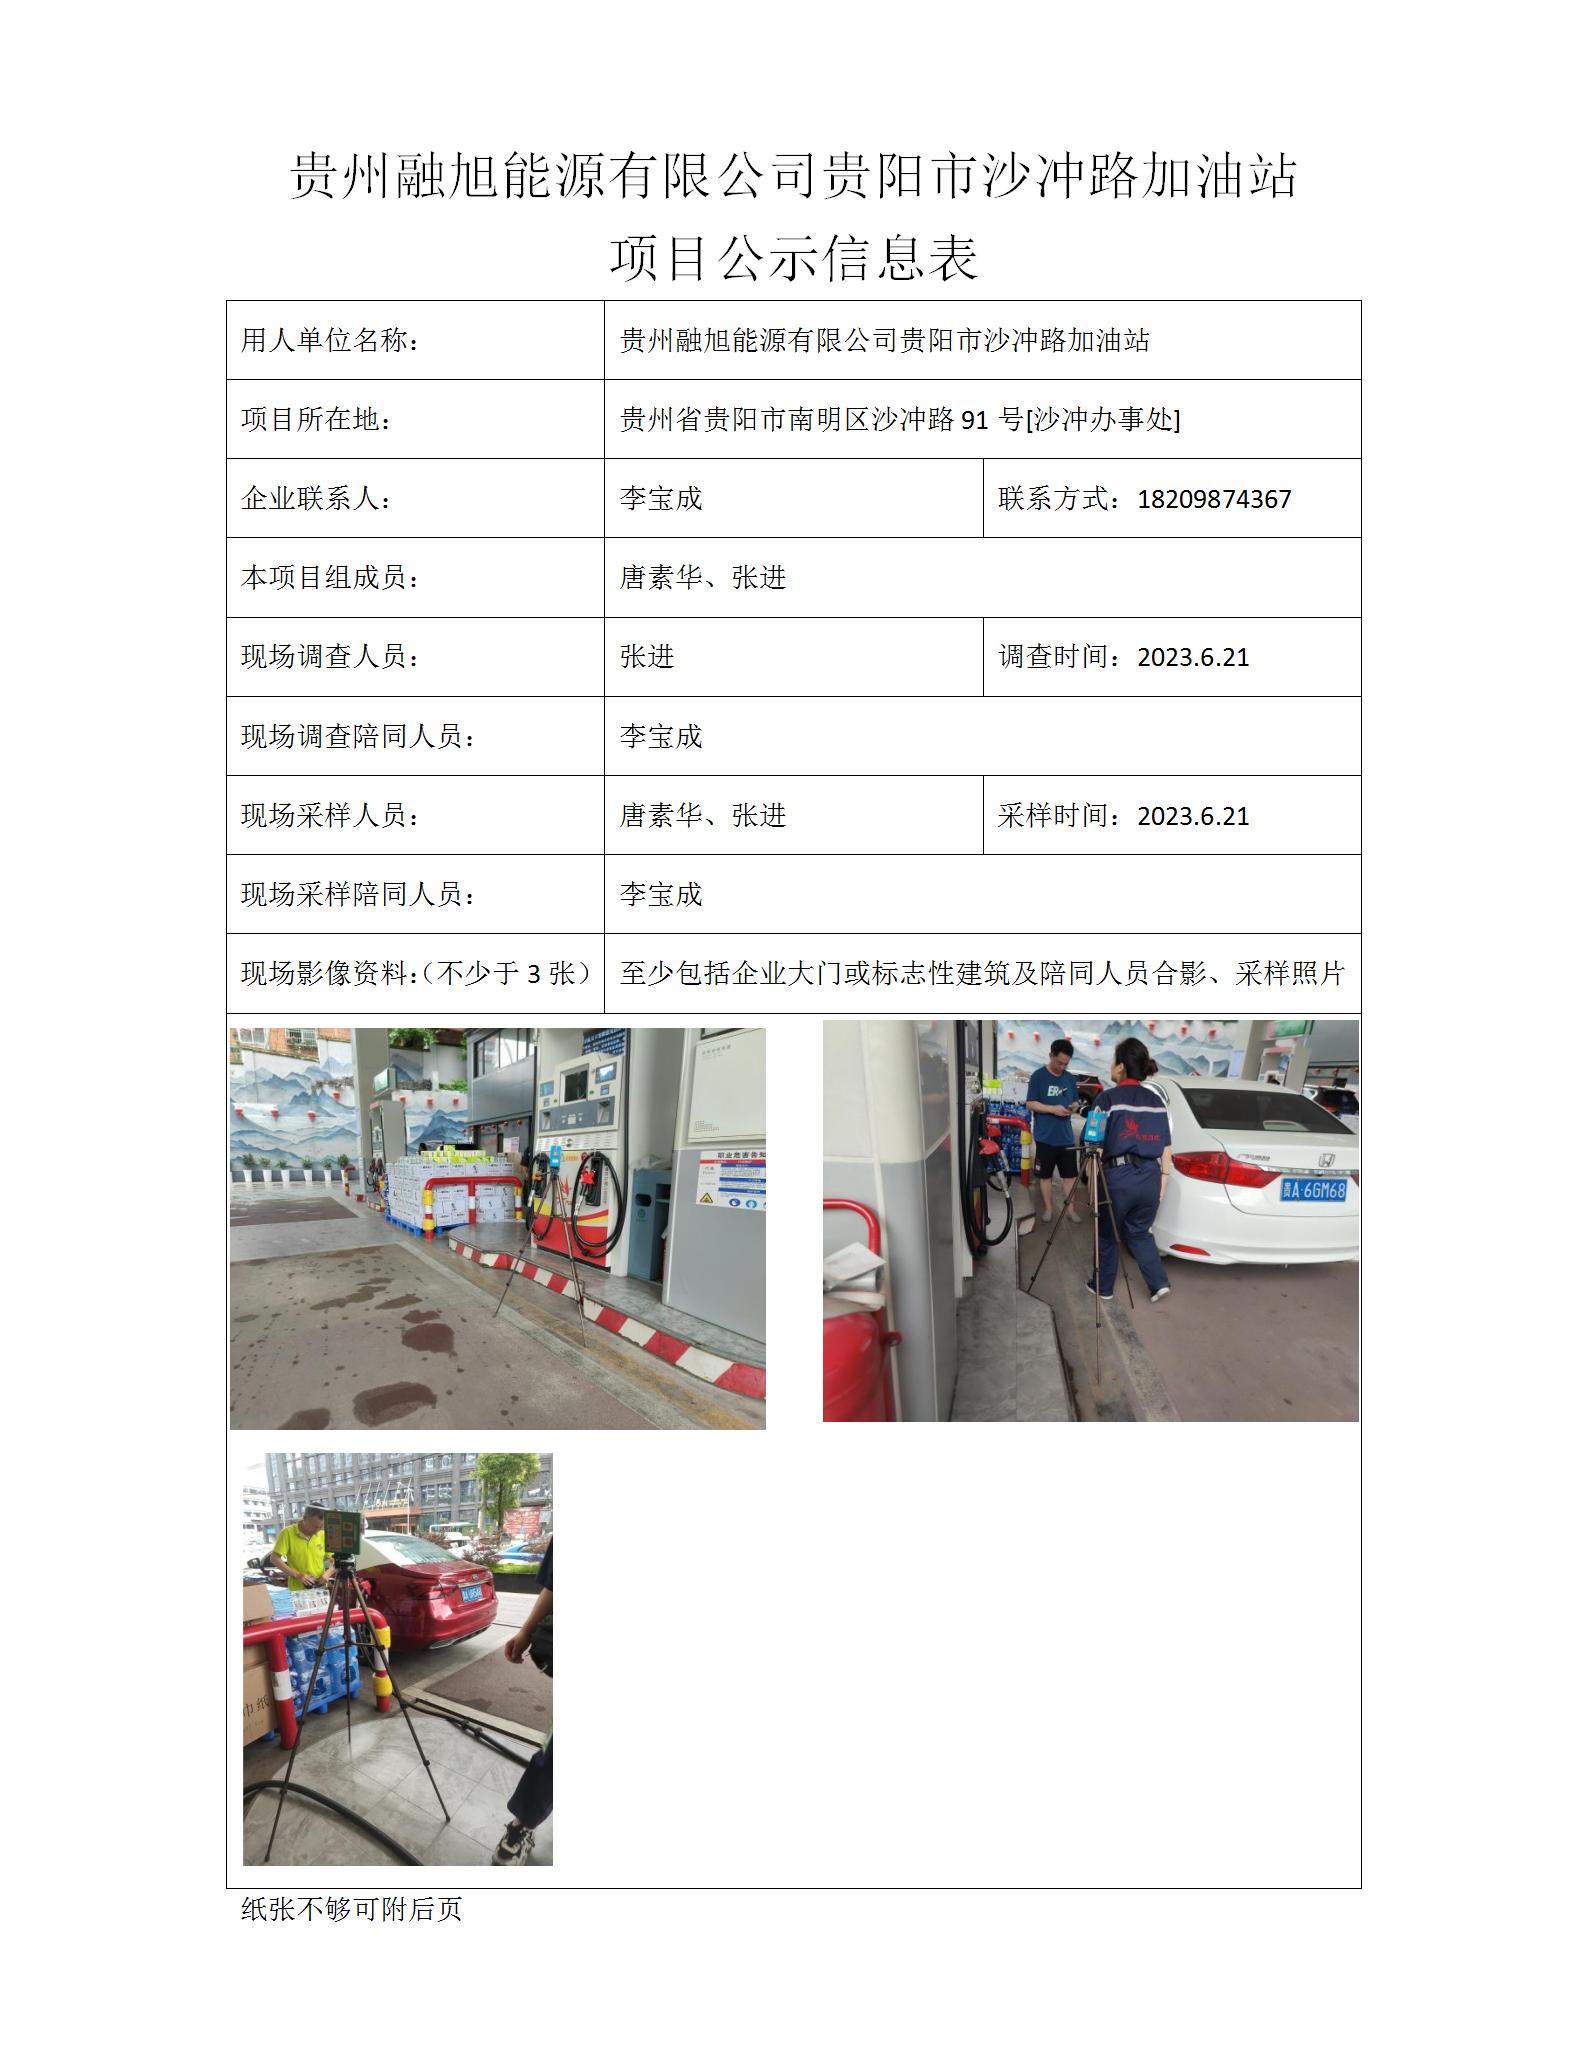 MD2023-0140（JC）贵州融旭能源有限公司贵阳市沙冲路加油站项目公示信息表_01.jpg